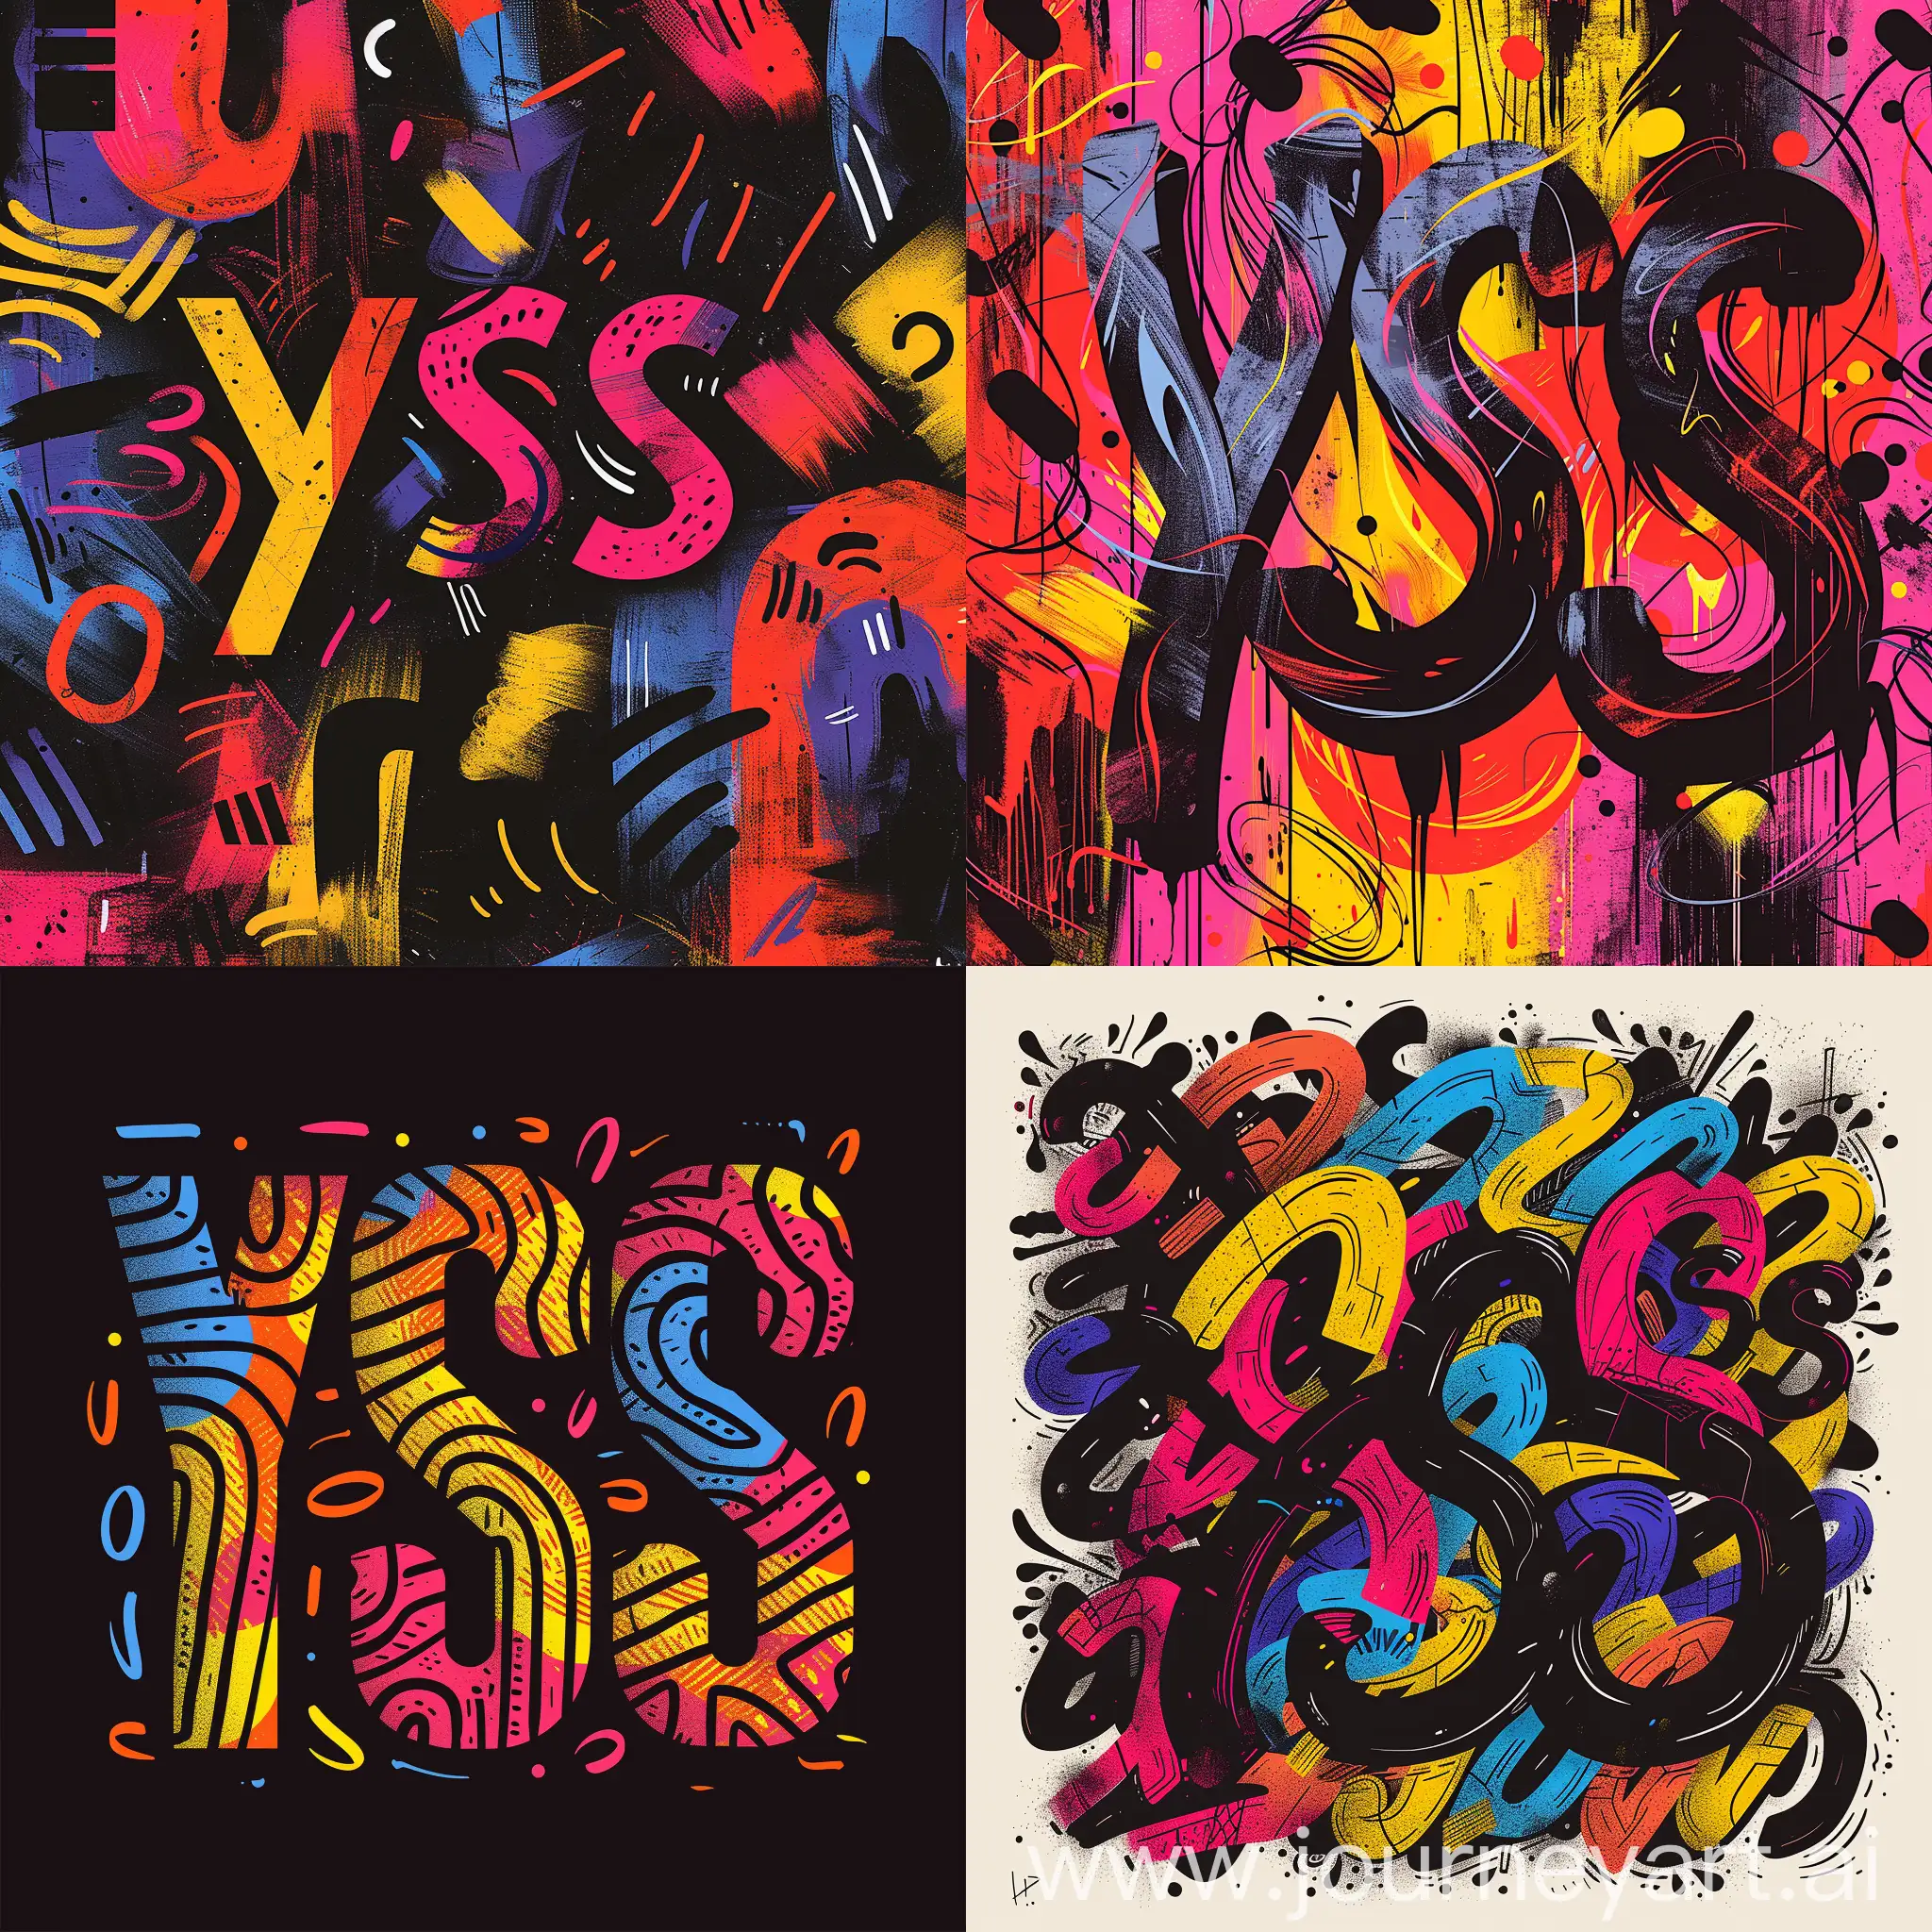 буквы "YSS" сливаются в узор, который ассоциируется с изображением грустной сестры, абстрактный логотип с контрастом черного и ярких цветов, --s 600